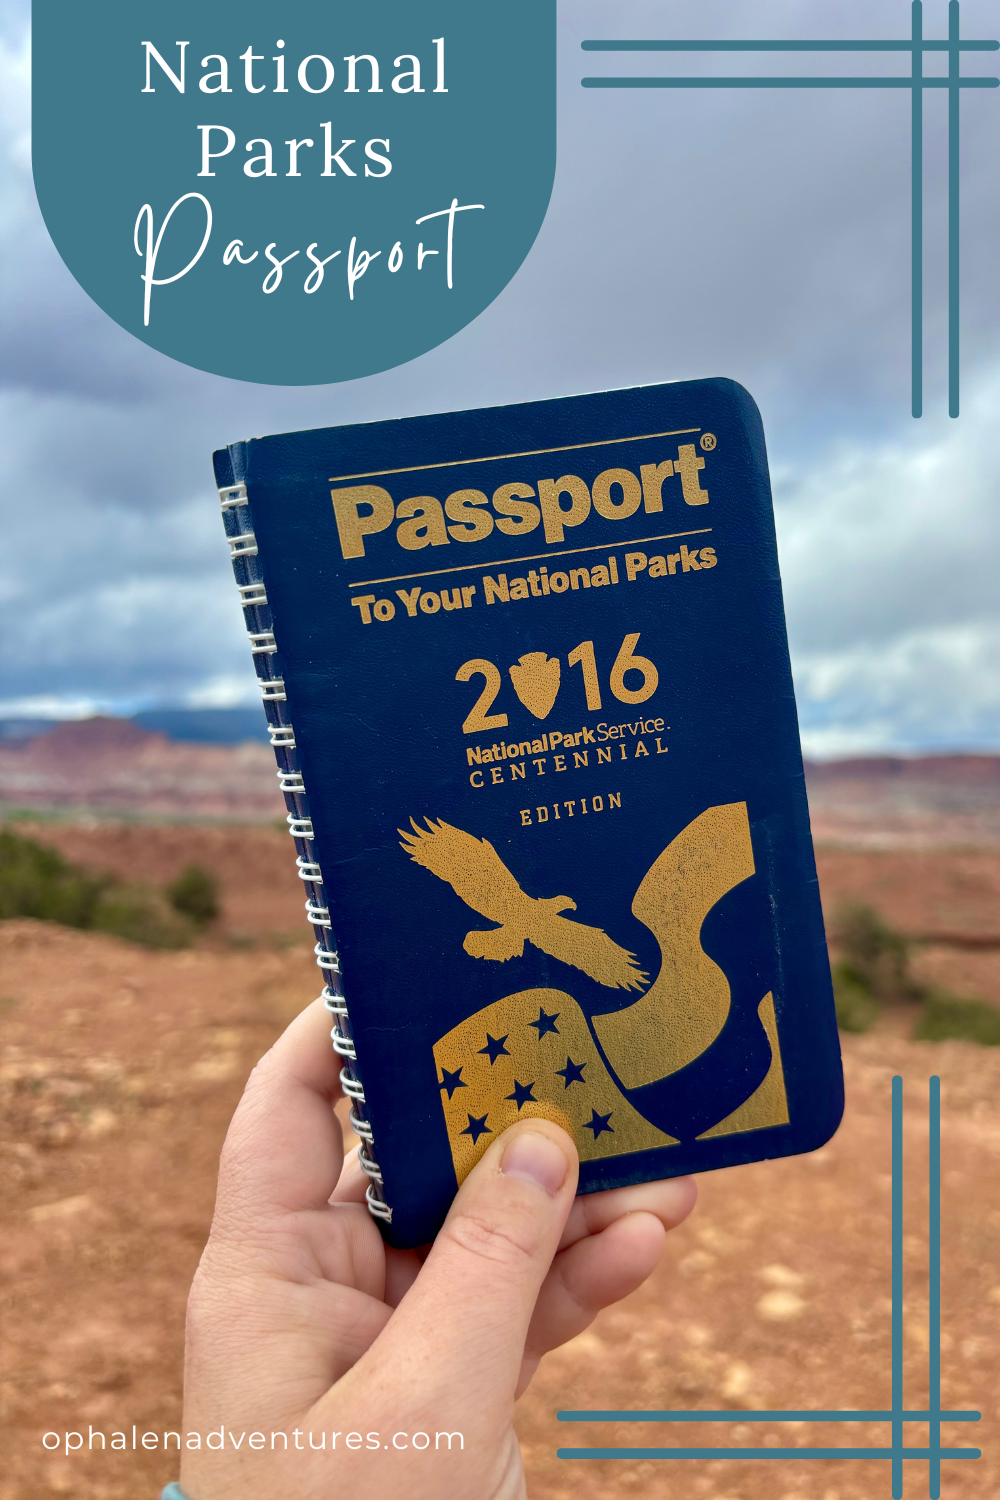 National Park Passport: The Best Souvenir!